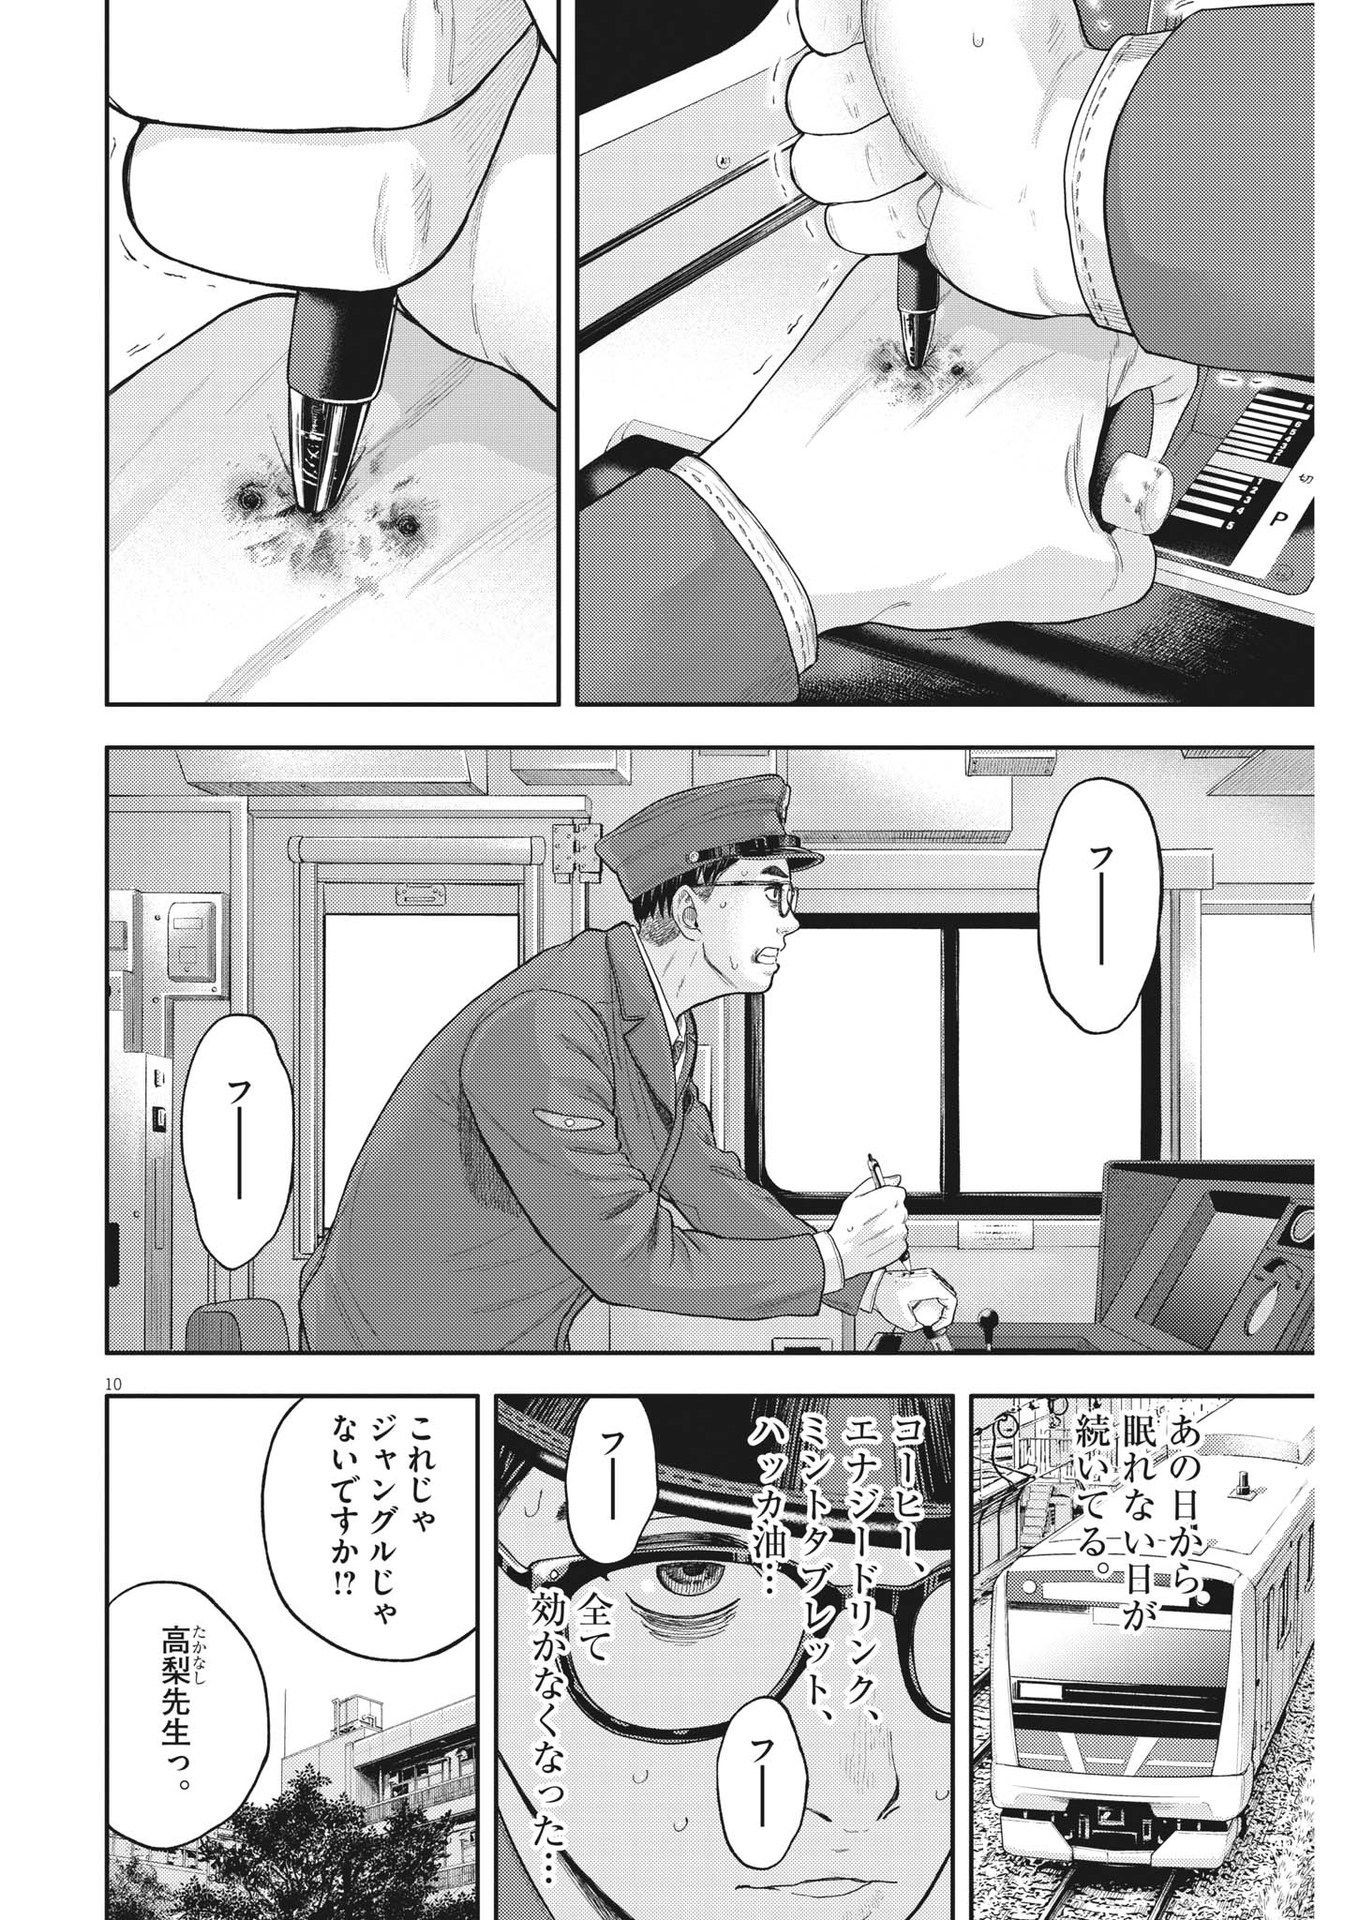 Yumenashi-sensei no Shinroshidou - Chapter 4 - Page 10